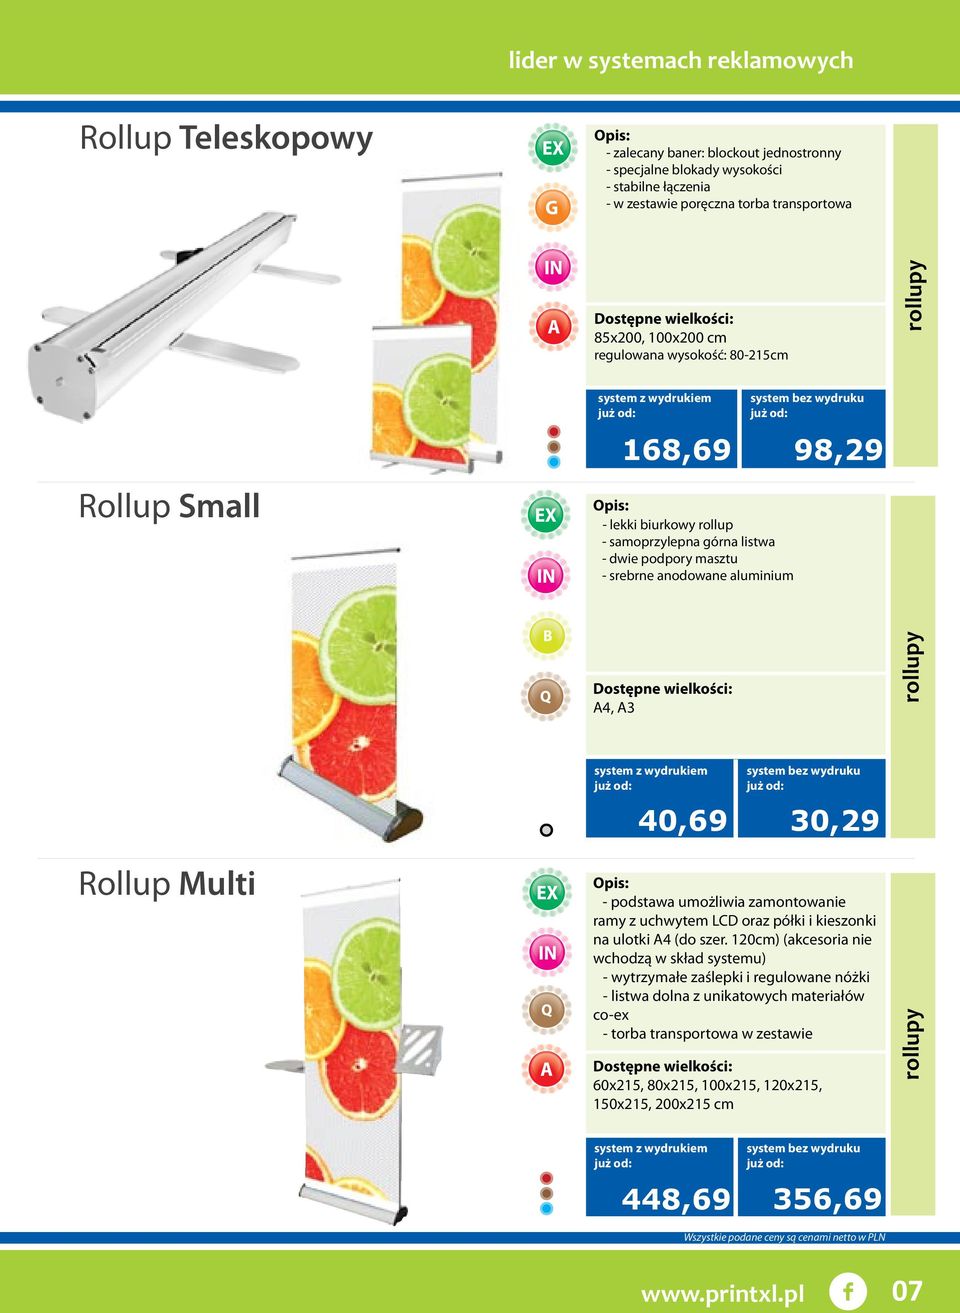 Rollup Multi 30,29 - podstawa umożliwia zamontowanie ramy z uchwytem LCD oraz półki i kieszonki na ulotki A4 (do szer.